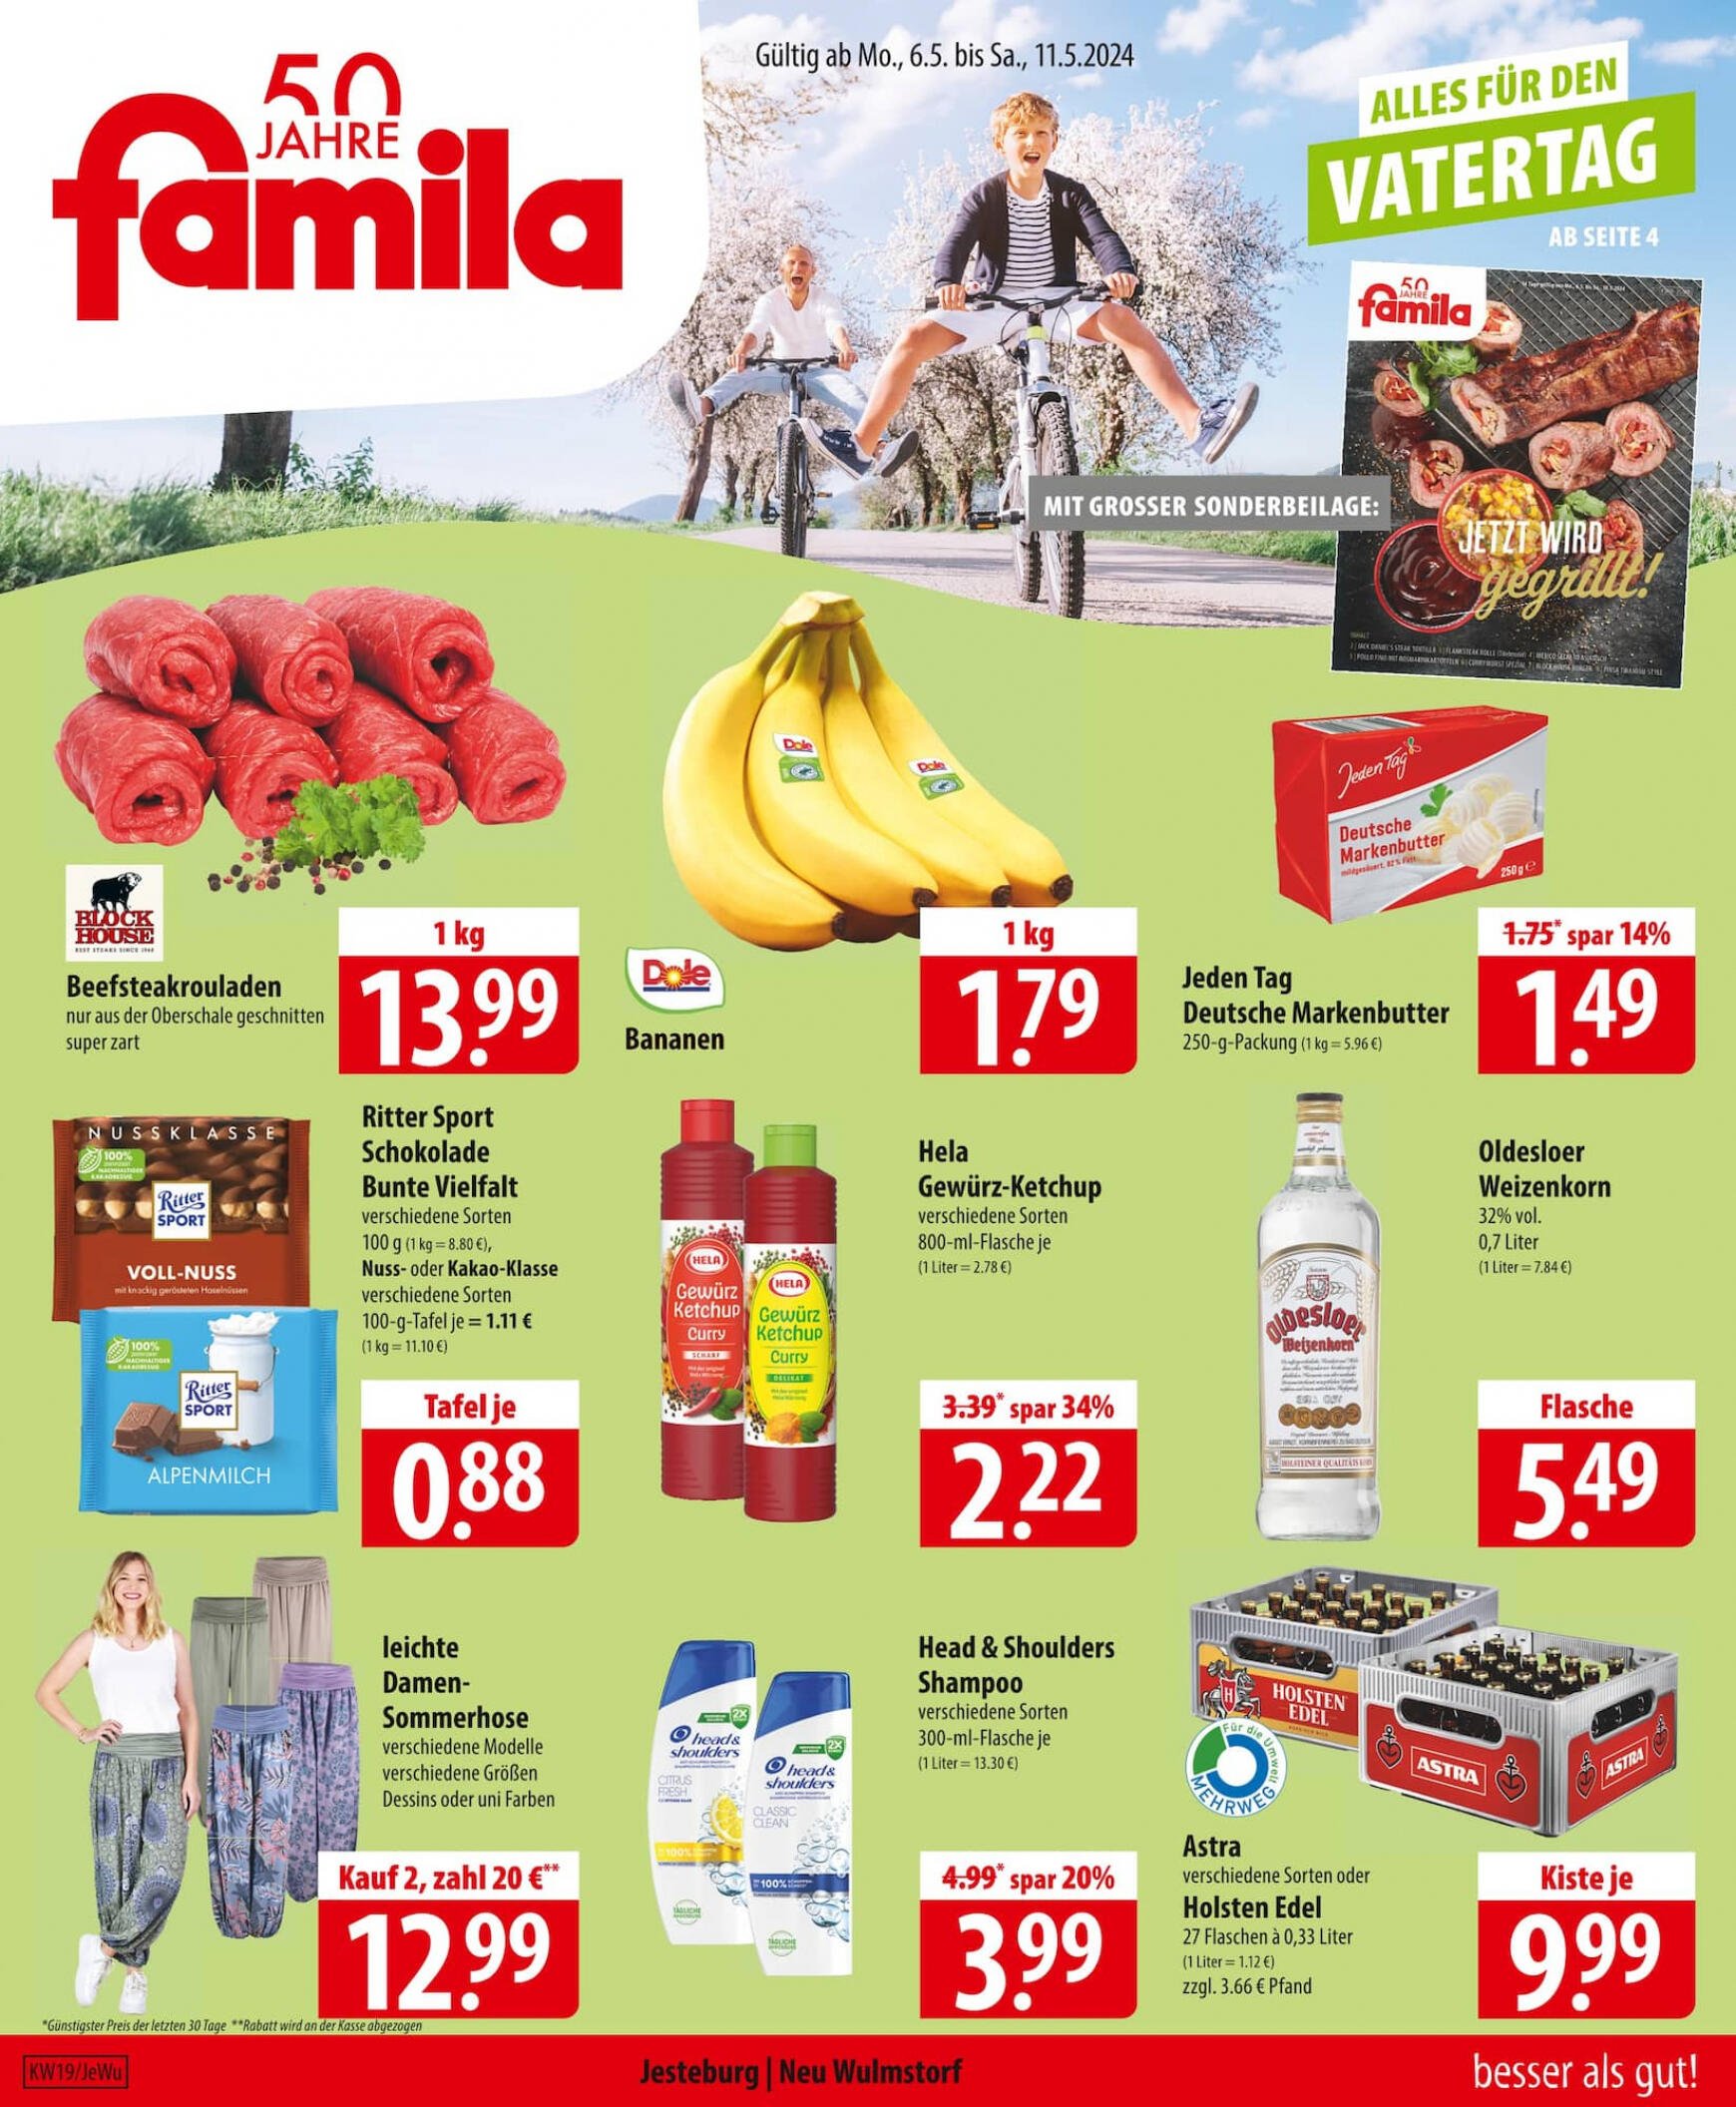 famila-nordost - Flyer Famila Nordost - besser als gut aktuell 06.05. - 11.05. - page: 1